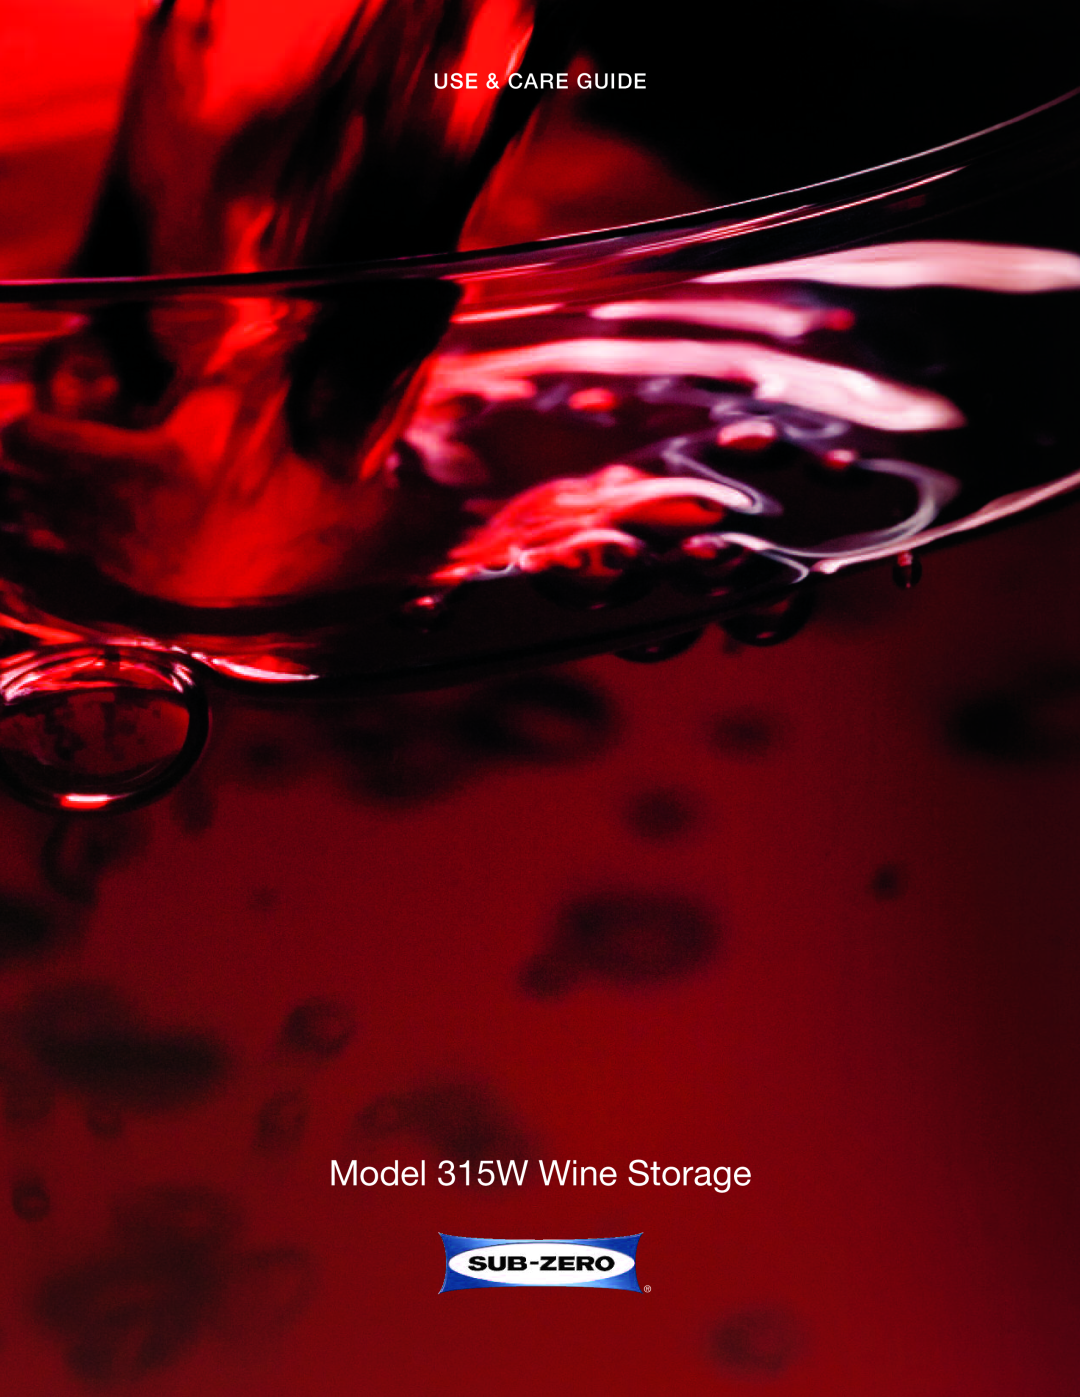 Sub-Zero manual Model 315W Wine Storage, Use & Care Guide 